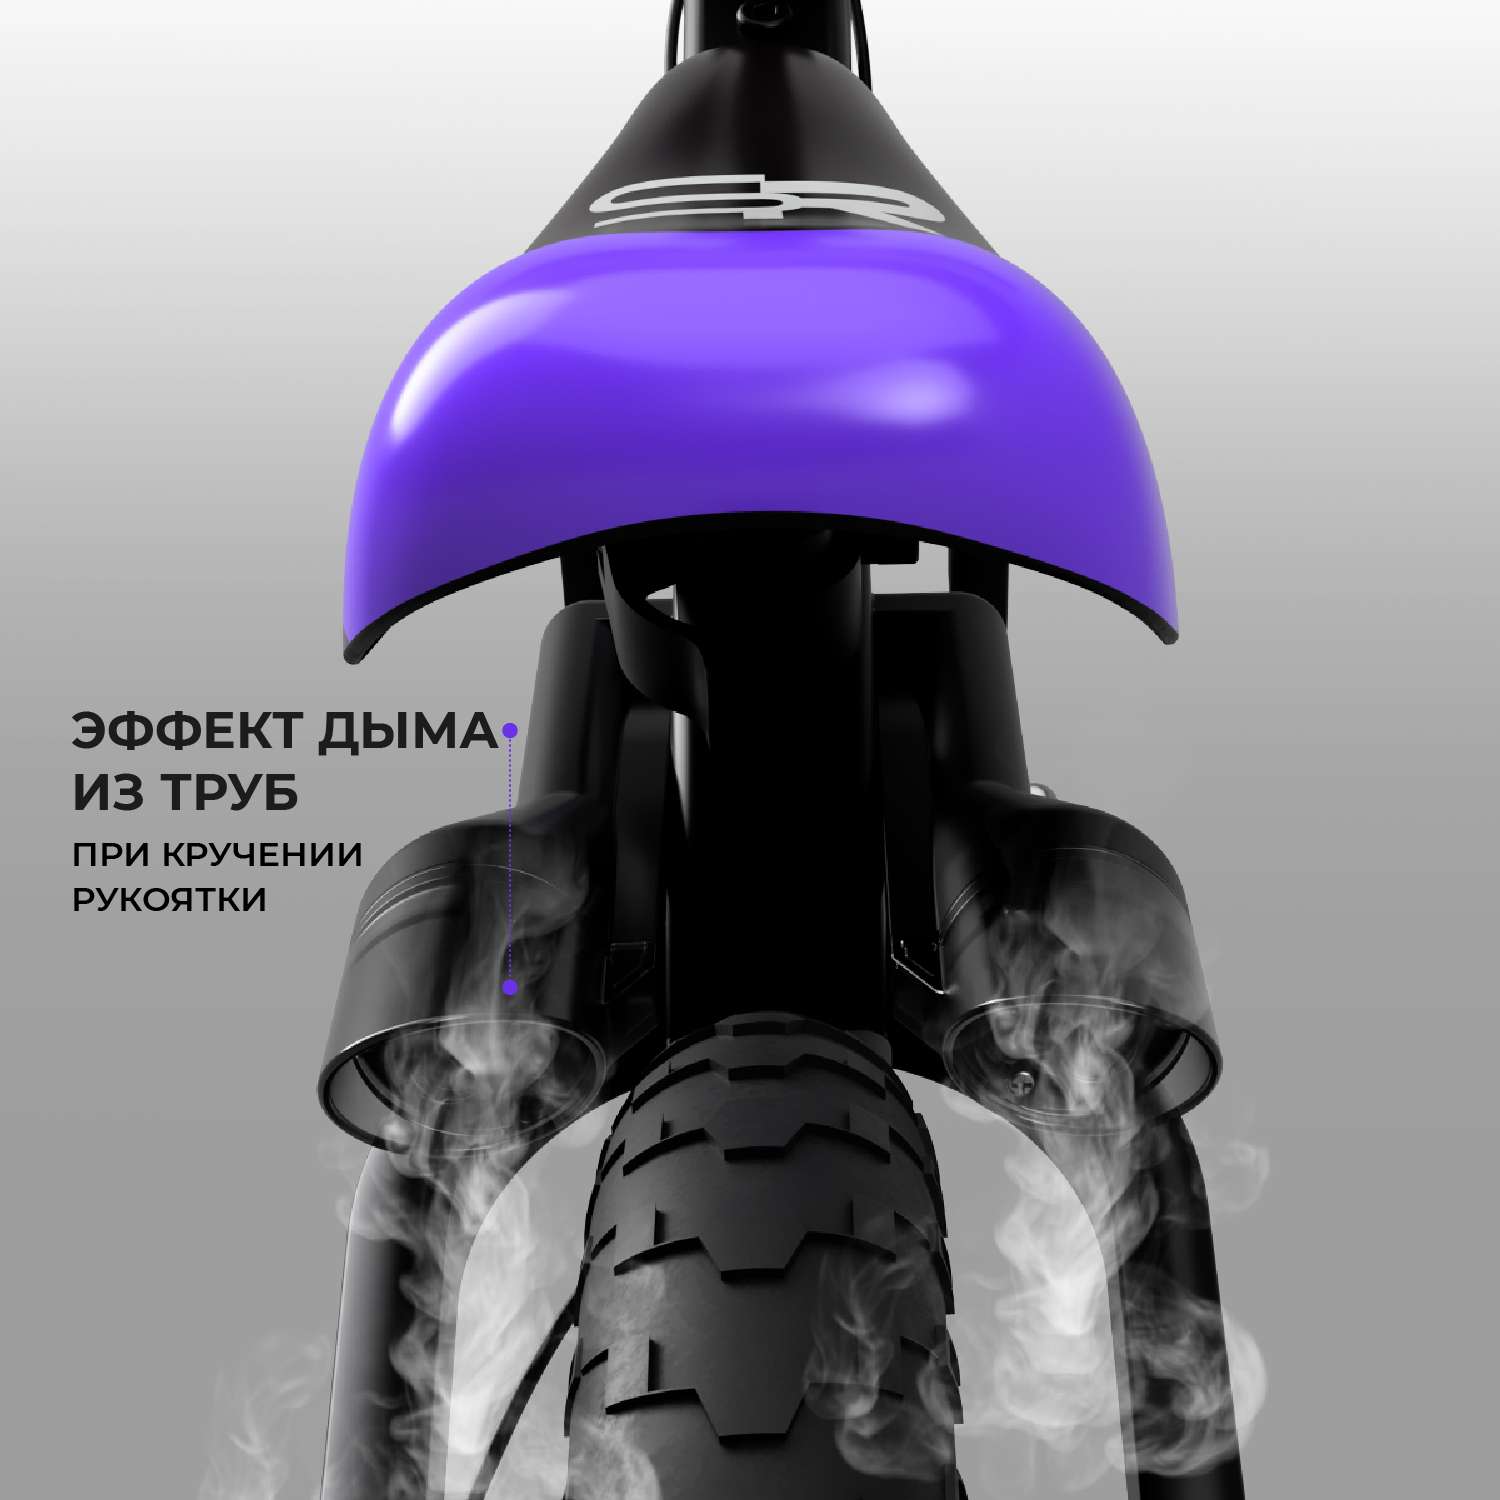 Беговел с эффектами Small Rider Nitro фиолетовый - фото 2